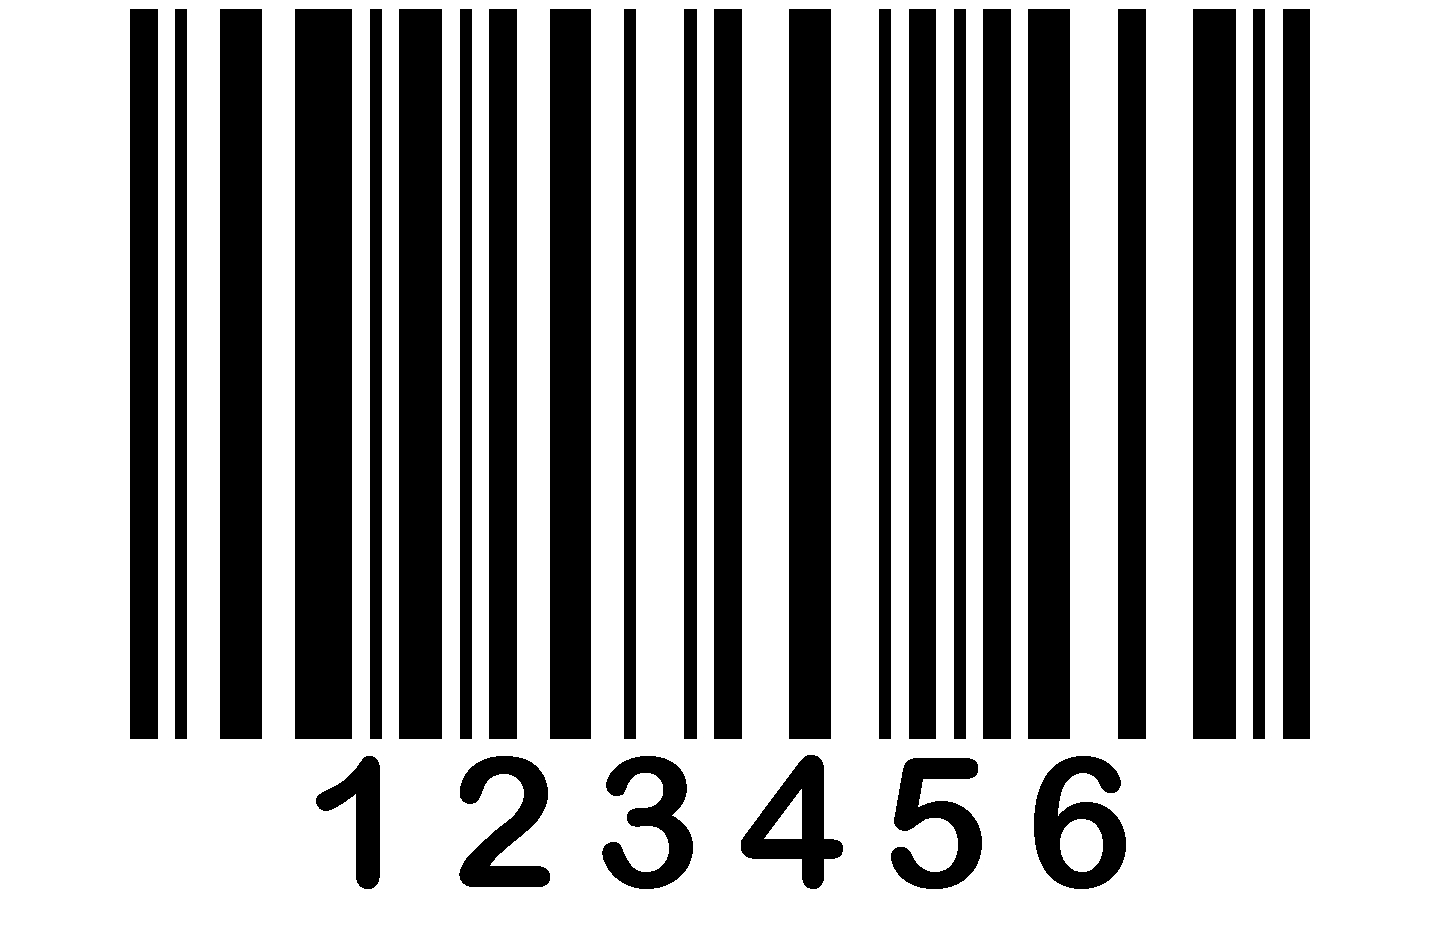 barcode.jpg